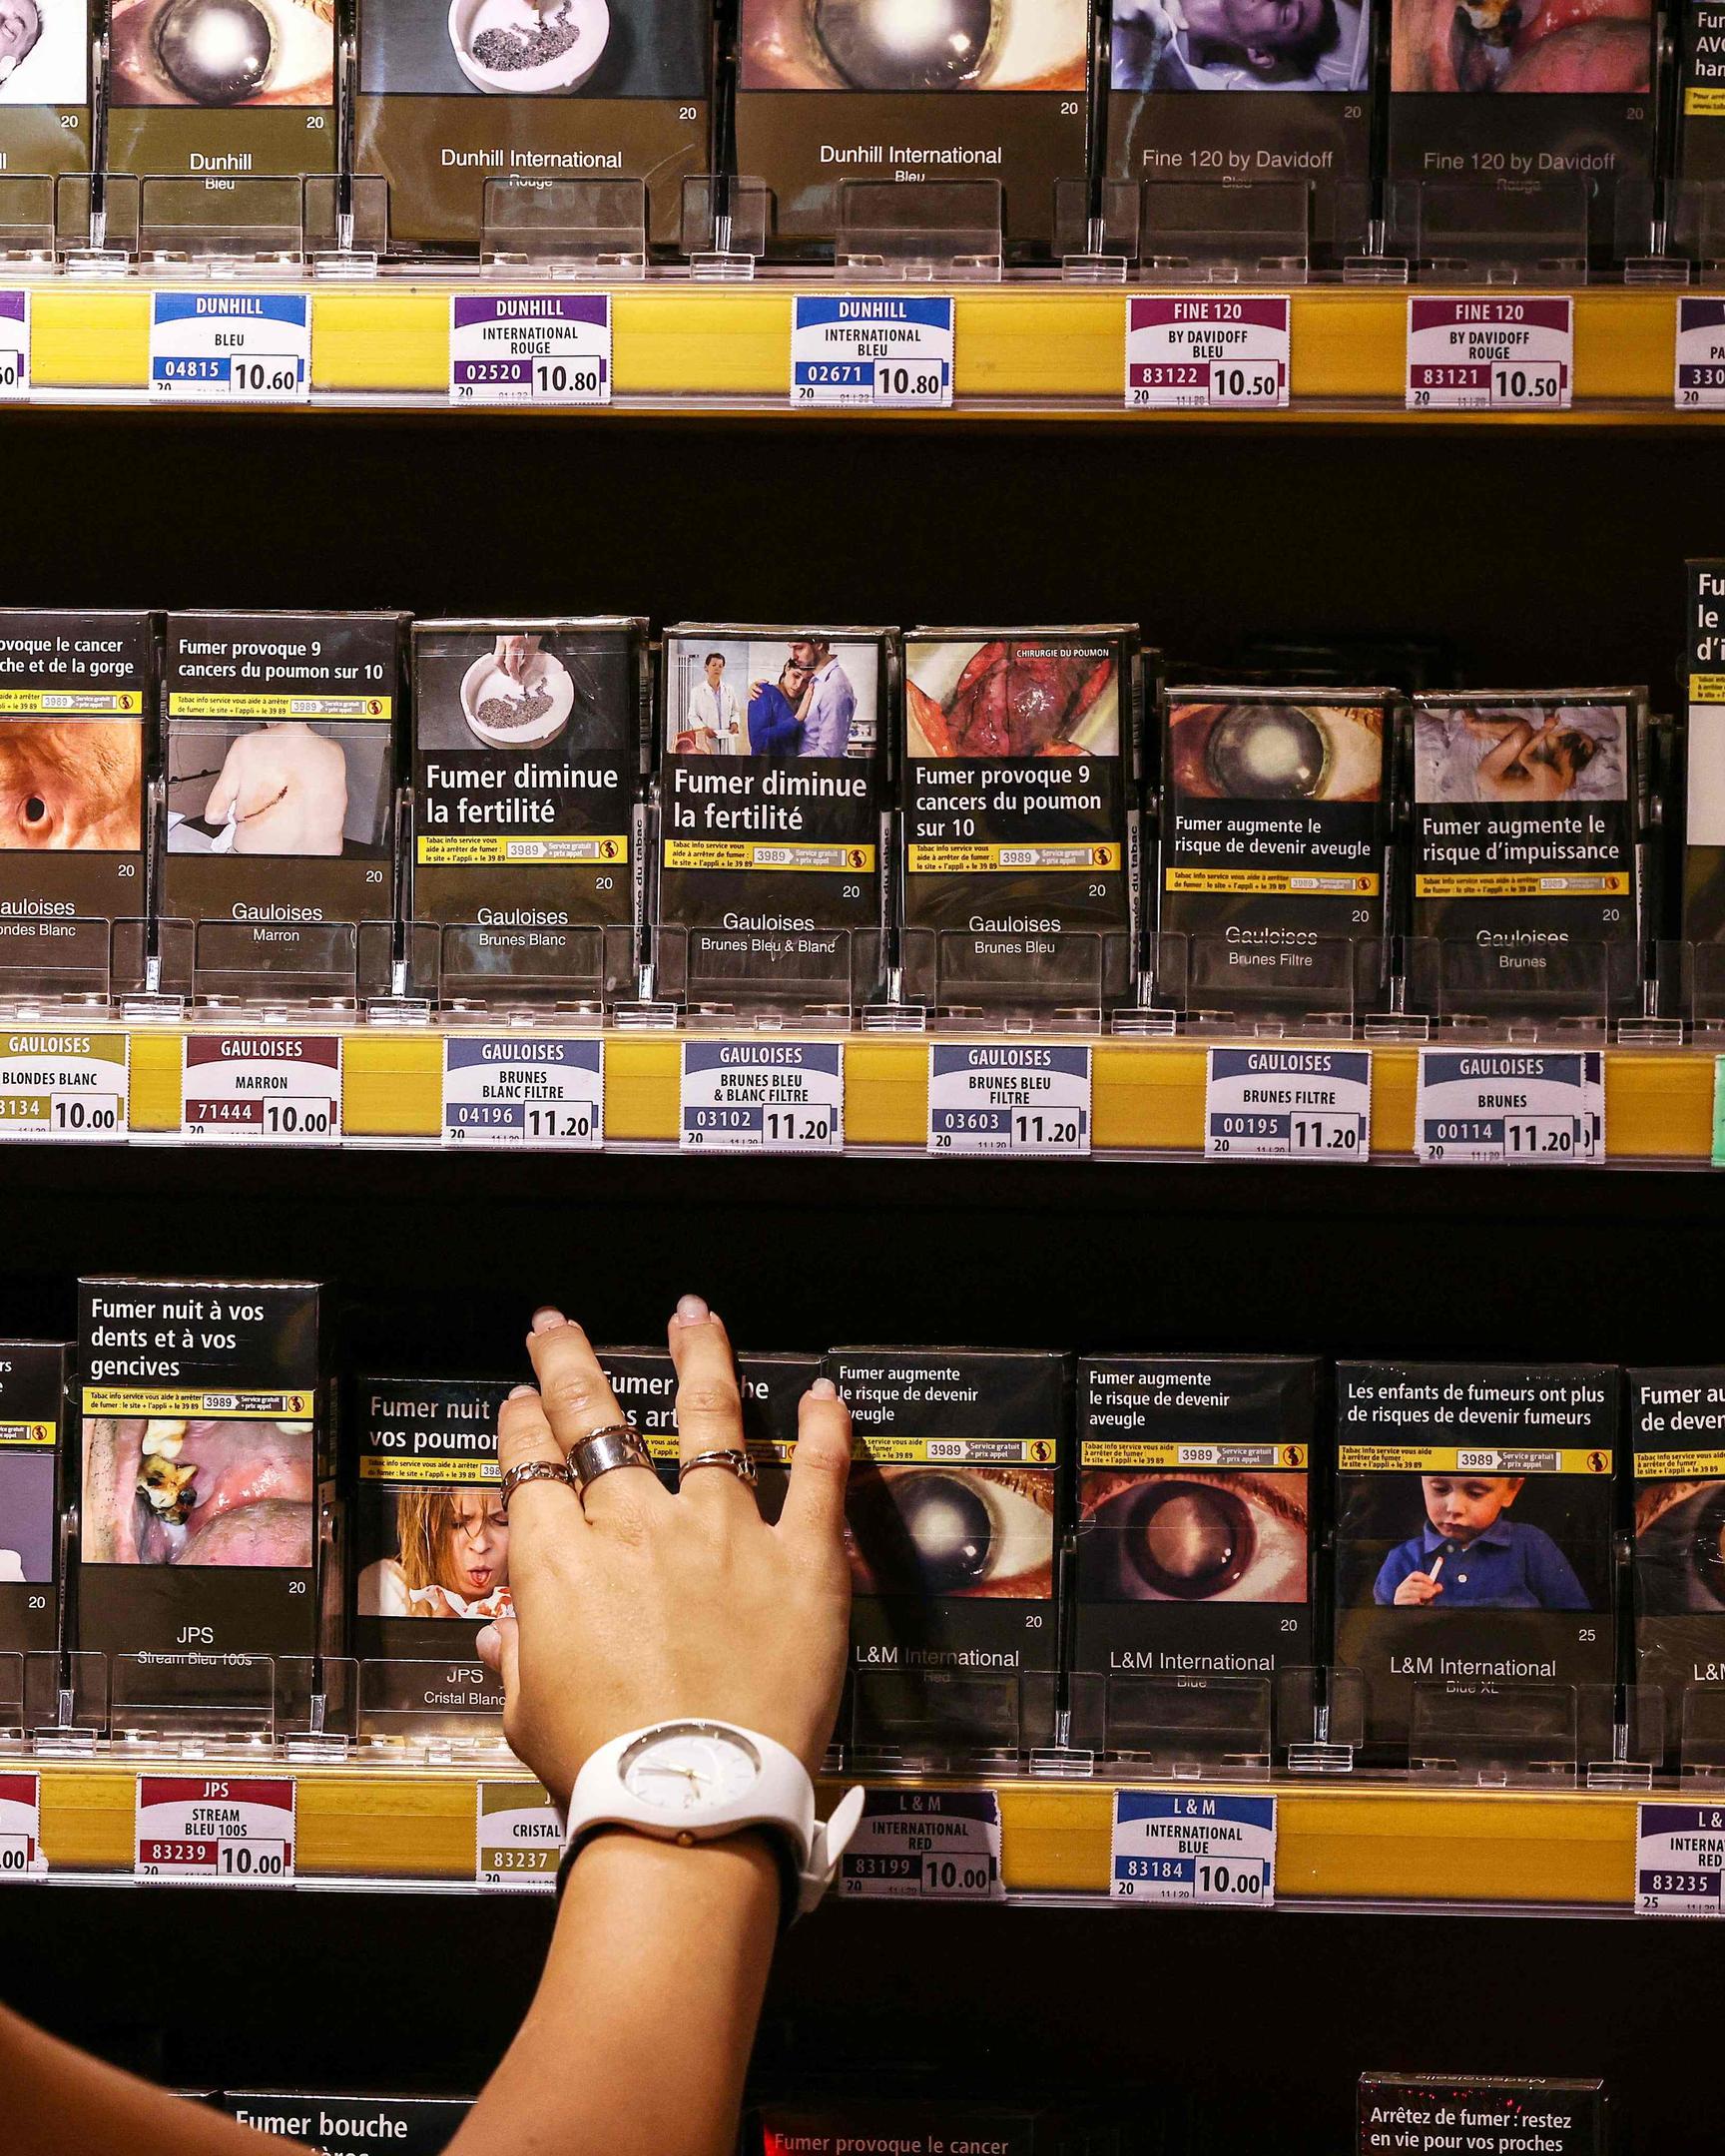 Die Preise für Zigaretten in Luxemburg werden um 10 Cent für eine 20er-Packung und um 30 Cent für eine 50g-Packung Drehtabak erhöht.